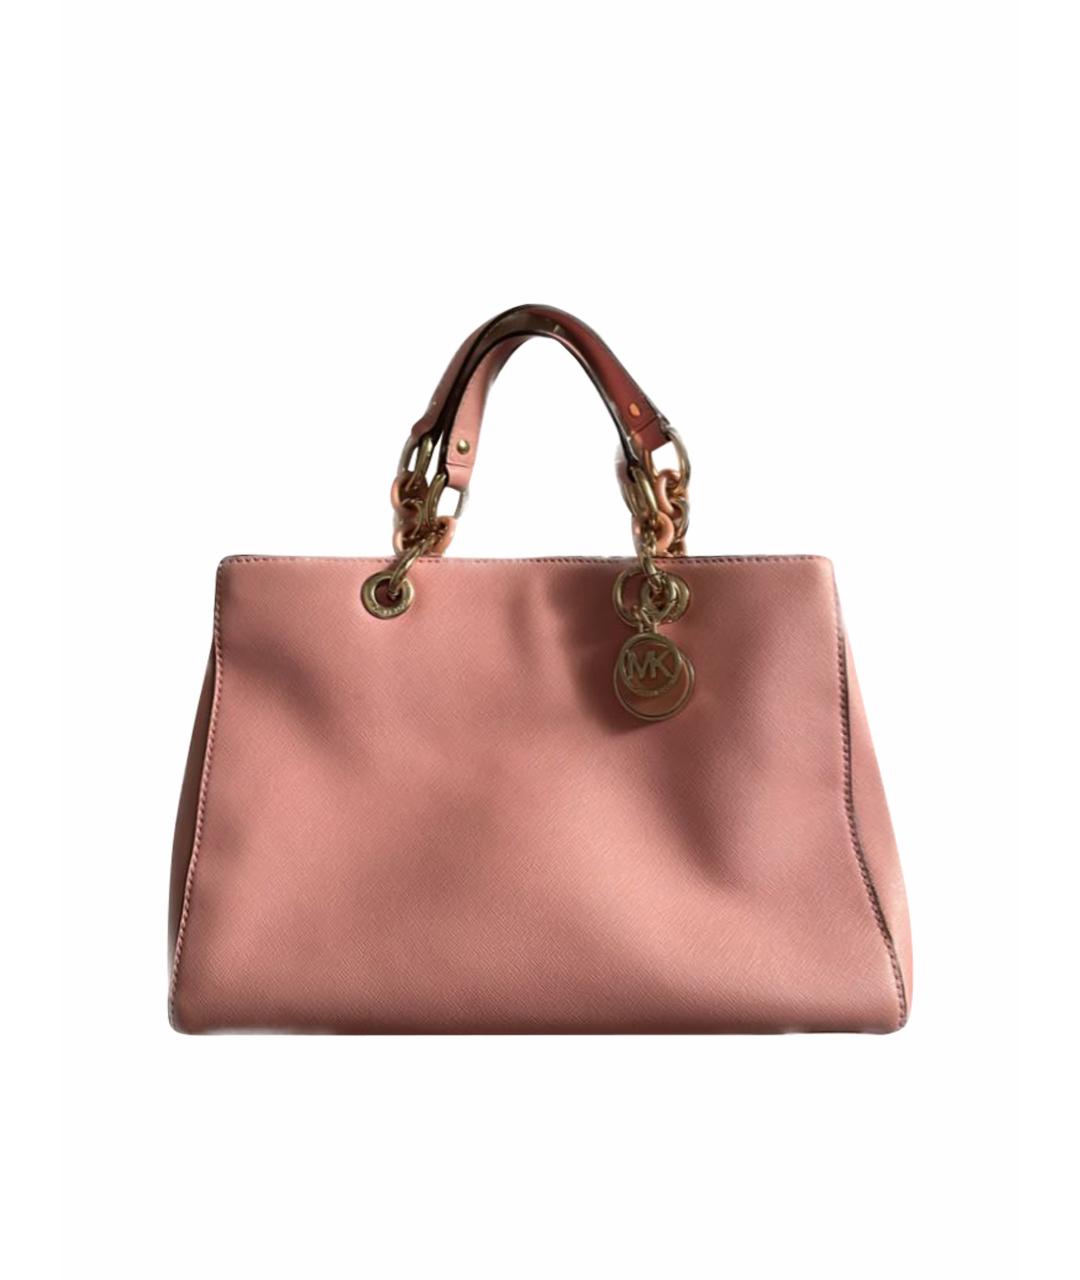 MICHAEL KORS Розовая кожаная сумка с короткими ручками, фото 1